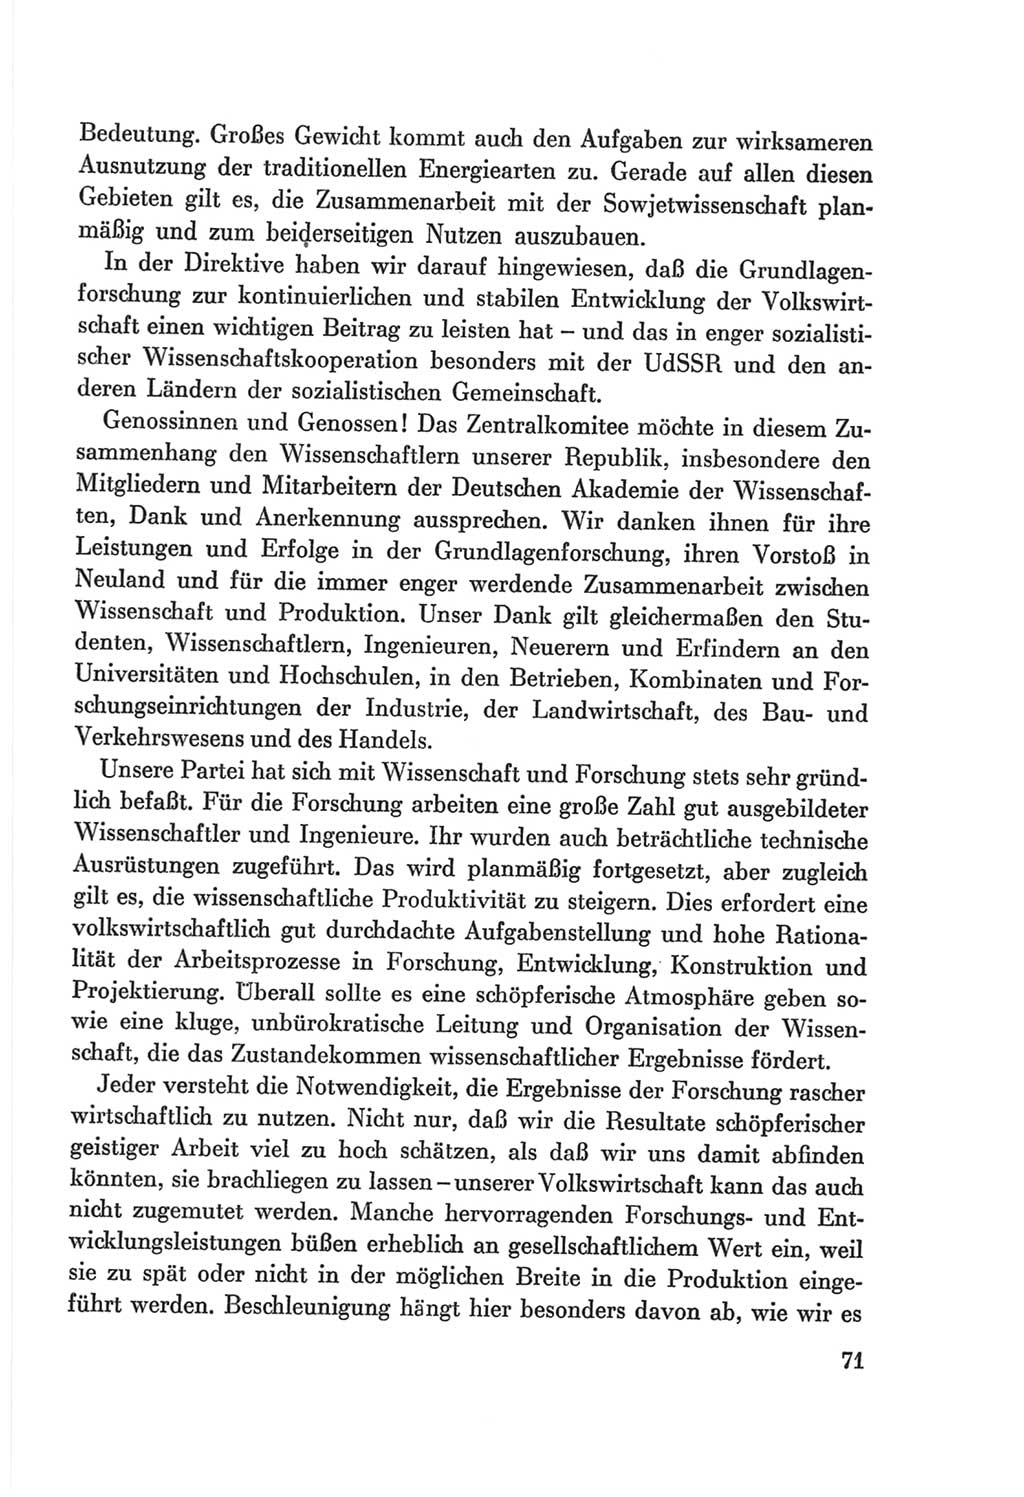 Protokoll der Verhandlungen des Ⅷ. Parteitages der Sozialistischen Einheitspartei Deutschlands (SED) [Deutsche Demokratische Republik (DDR)] 1971, Band 1, Seite 71 (Prot. Verh. Ⅷ. PT SED DDR 1971, Bd. 1, S. 71)